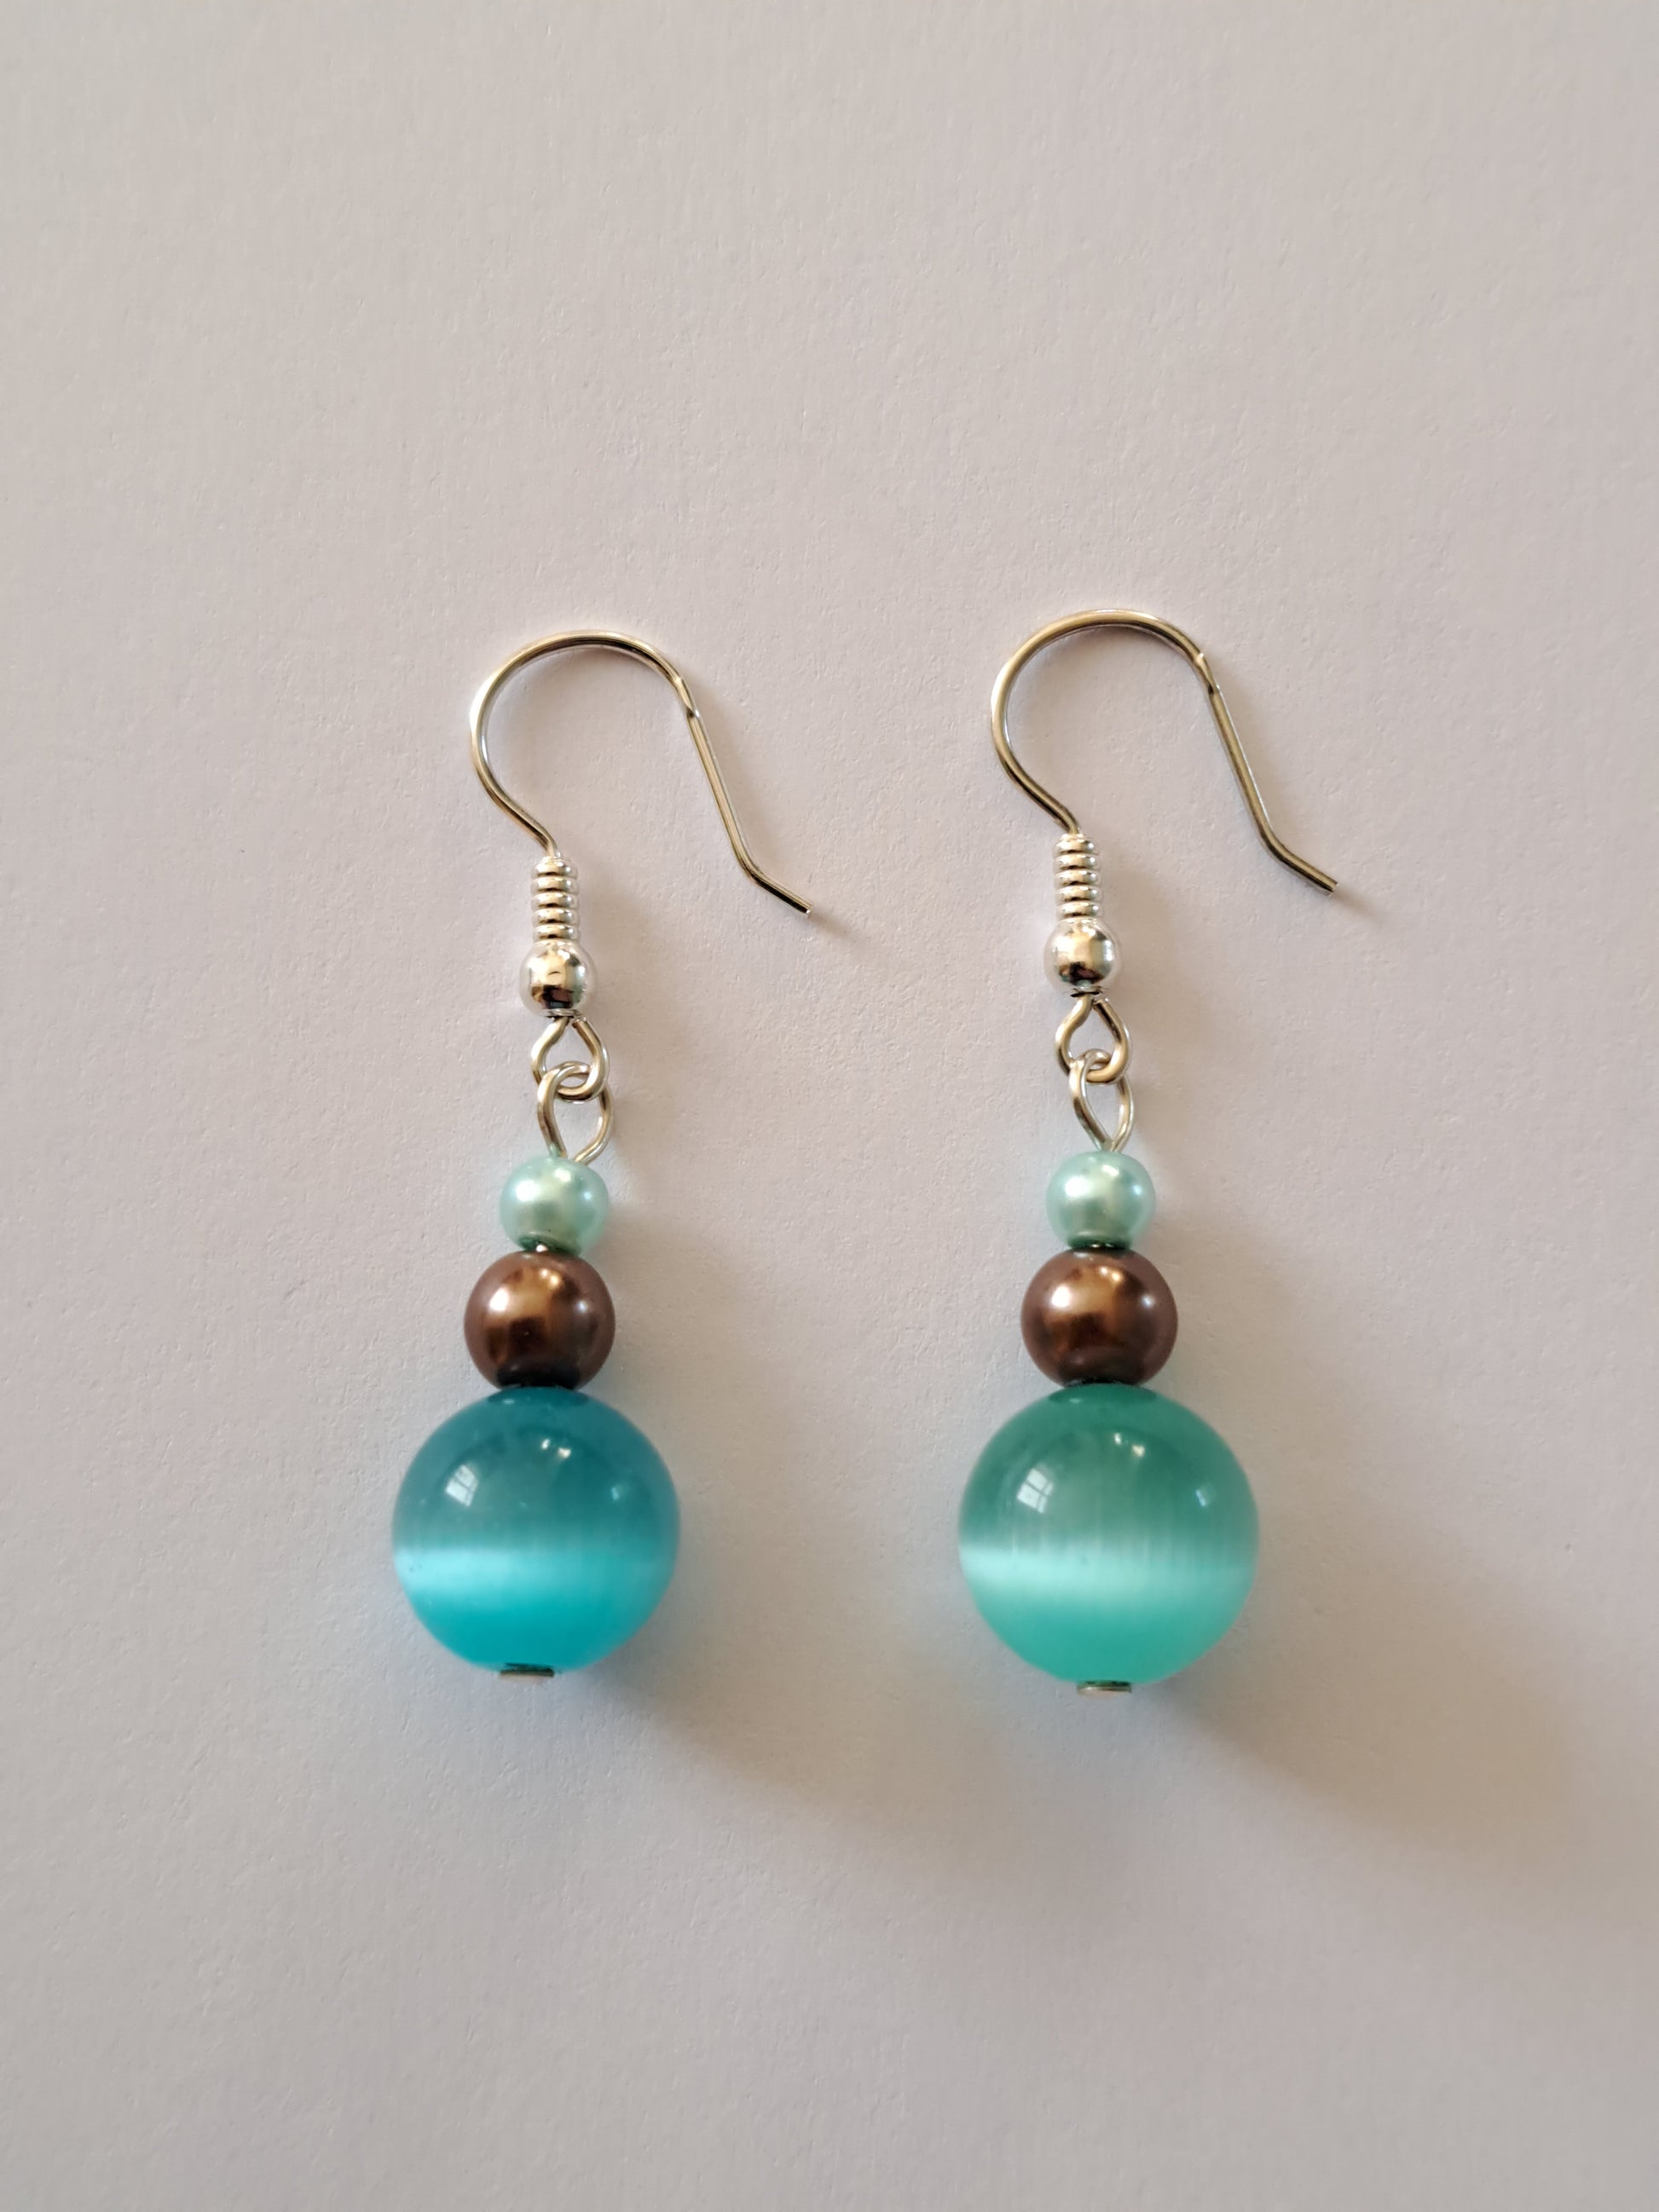 Boucles d'oreilles en argent avec perles nacrées et oeil de chat turquoise. Site de bijoux en ligne. France